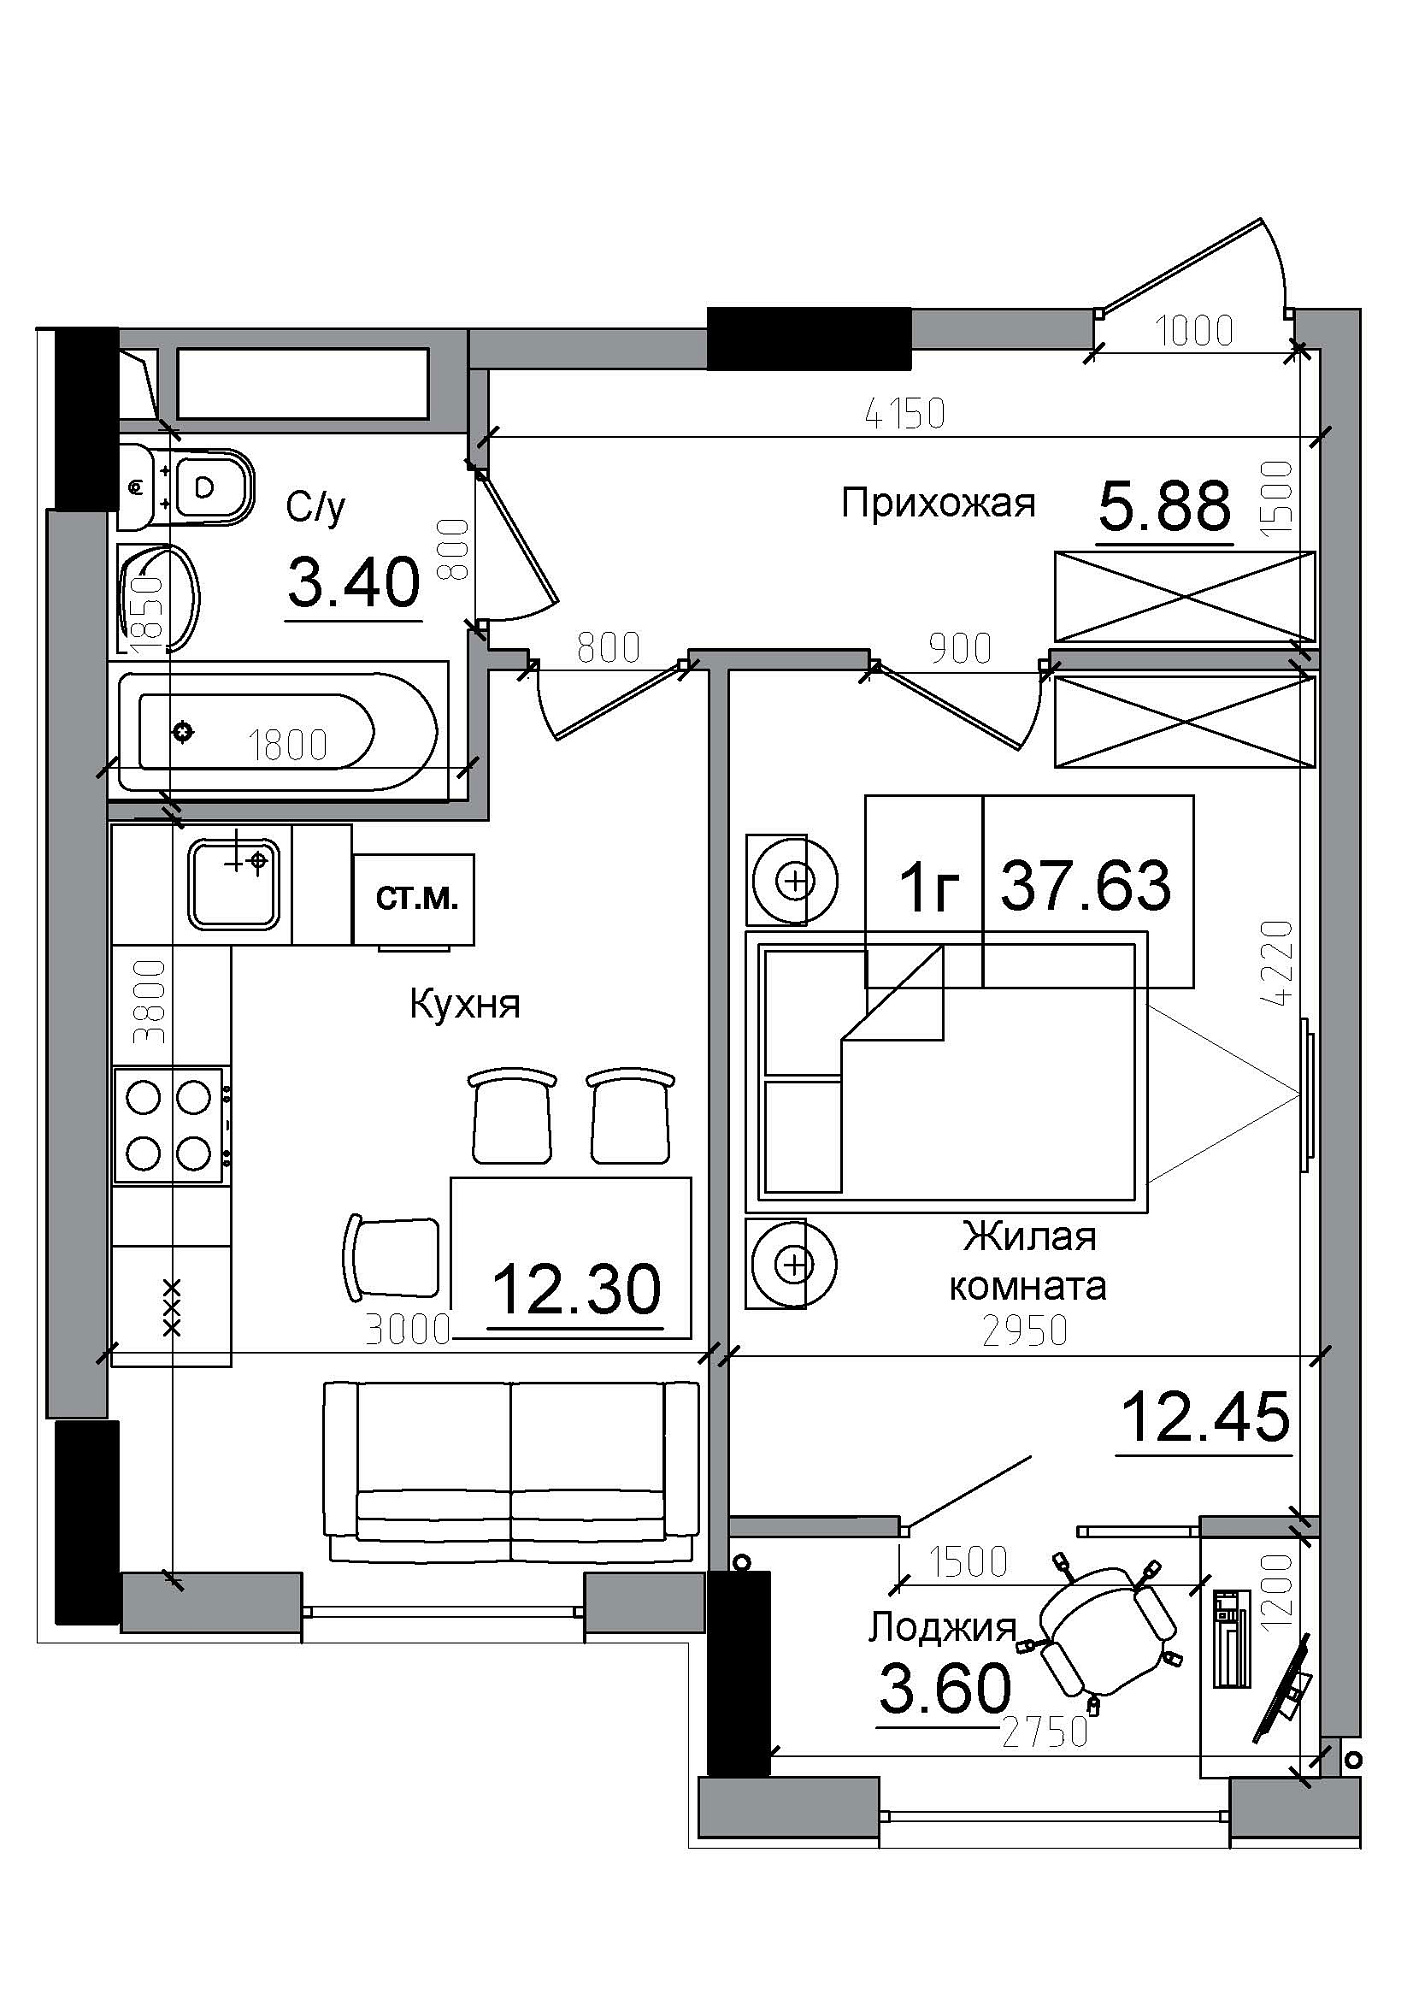 Планування 1-к квартира площею 37.63м2, AB-12-06/00004.